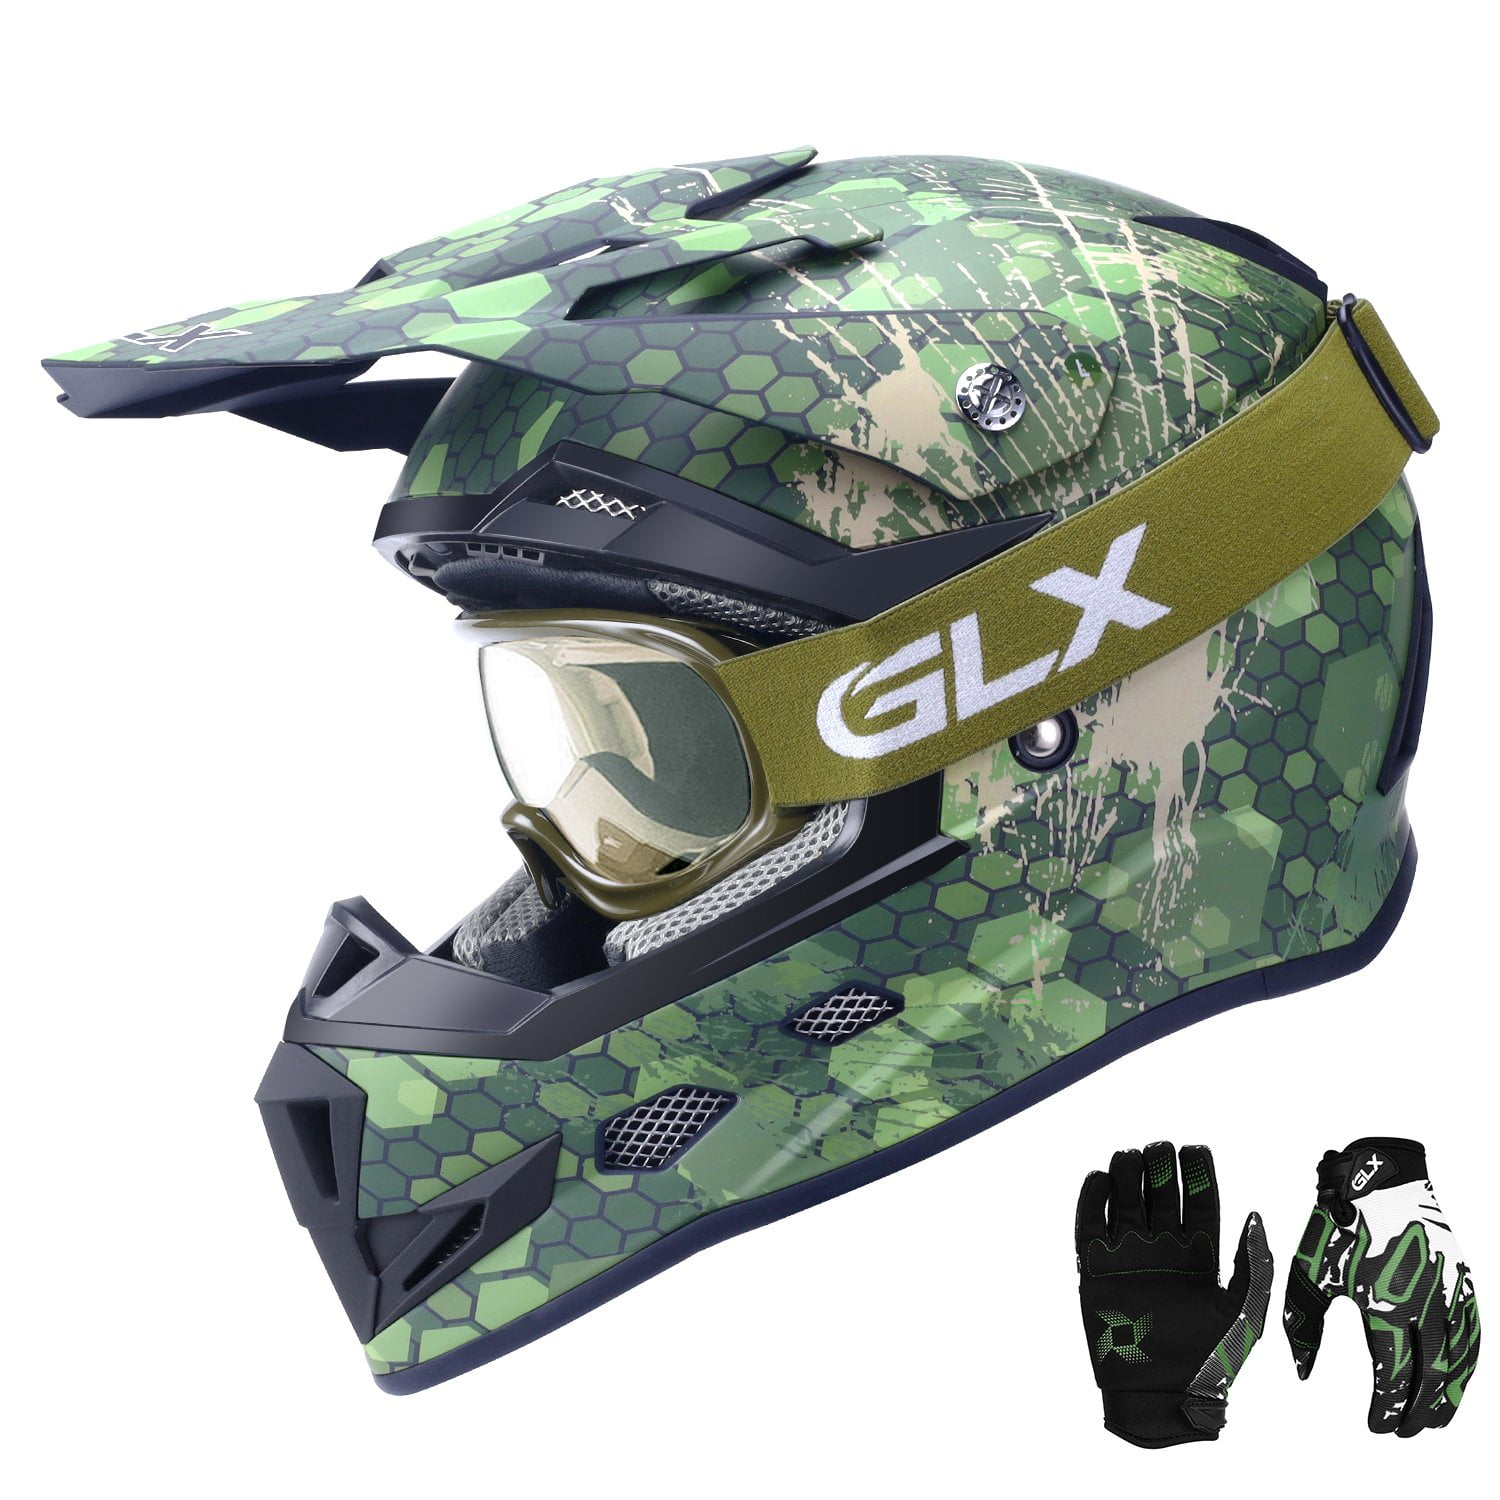 GLX Unisex-Child DOT Kids Youth ATV Off-Road Dirt Bike Motocross Helmet Gear Combo Gloves Goggles for Boys & Girls 